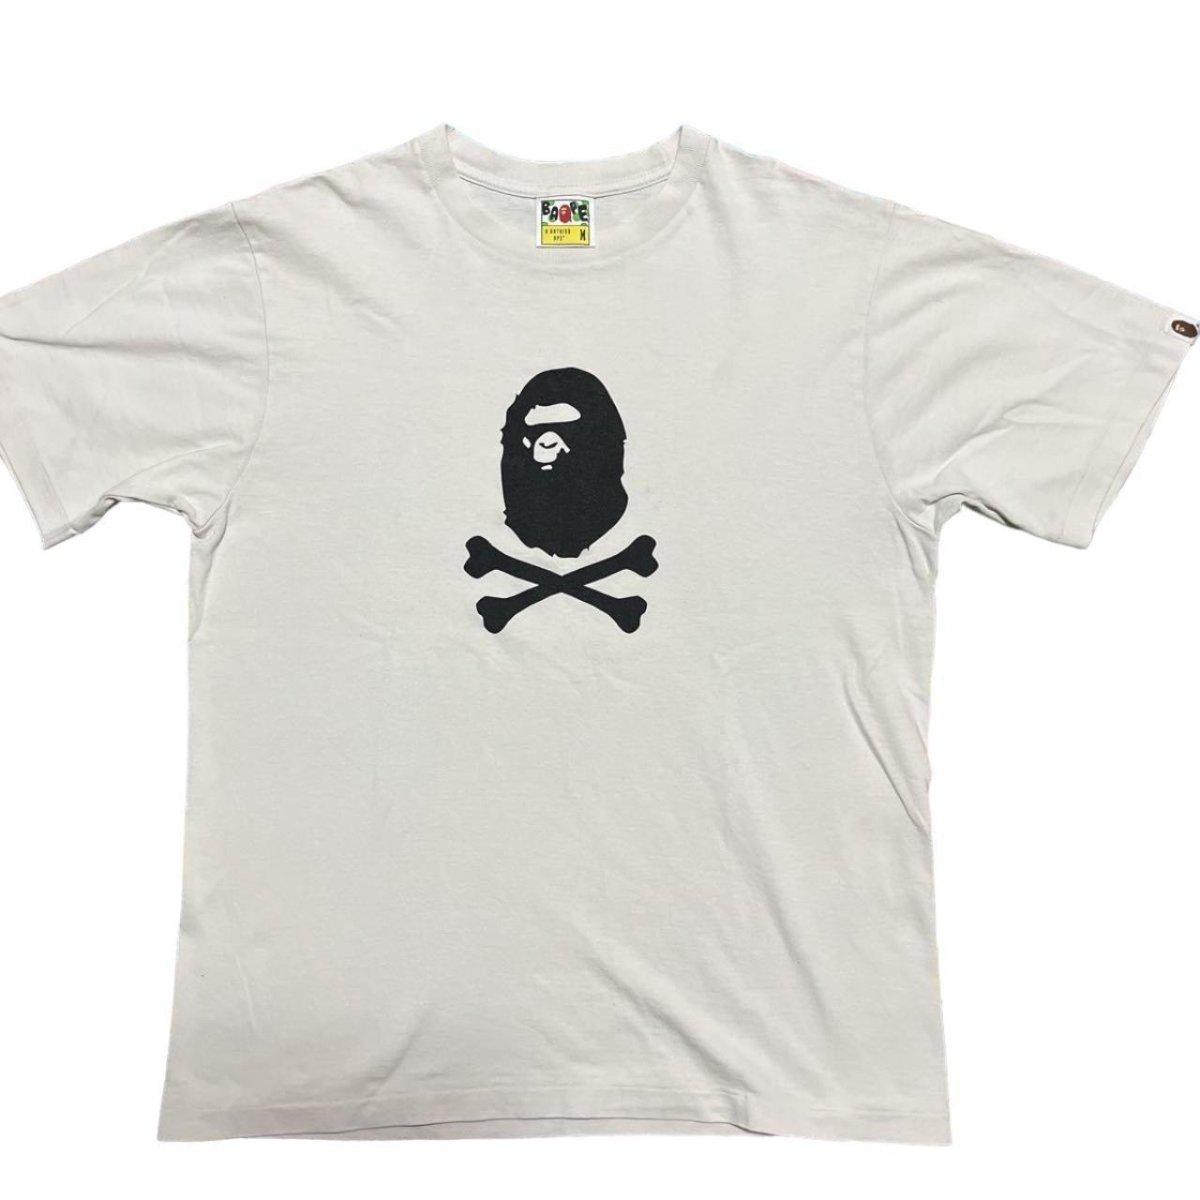 A Bathing Ape / BAPE White & Black Logo T-shirt - Known Source